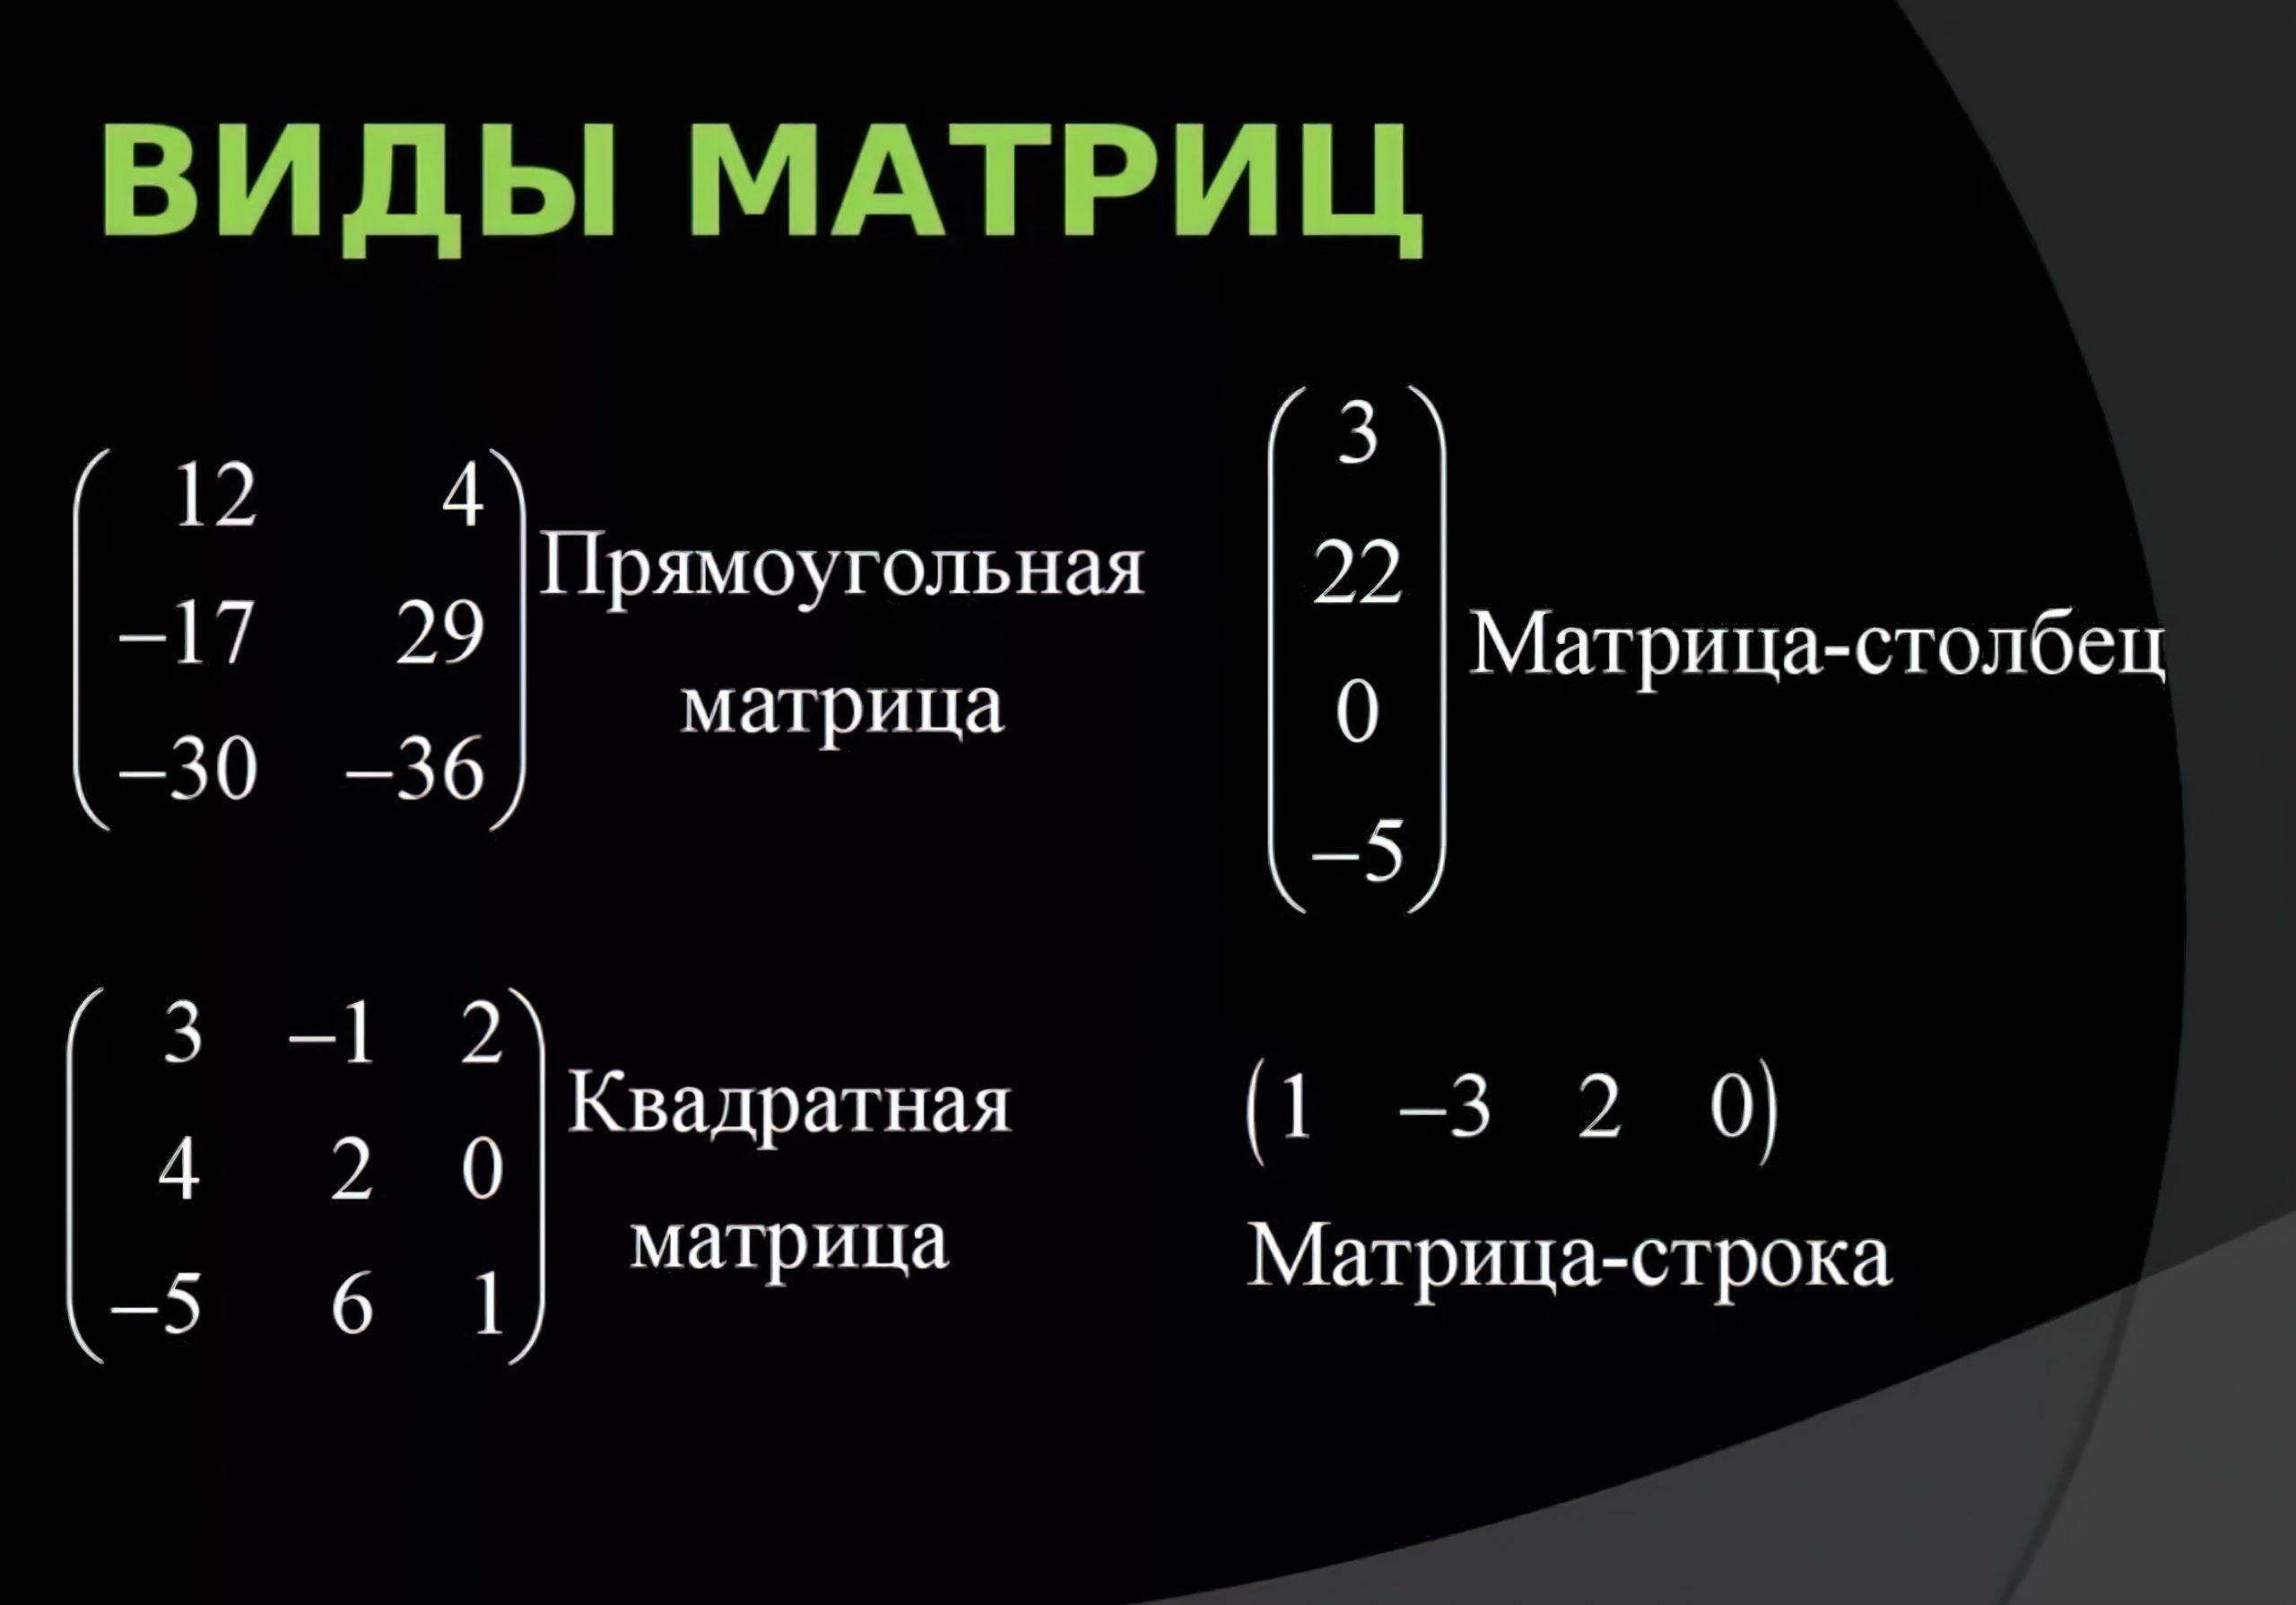 Элементы составляющие матрицу. Матрицы виды матрицы элементы матрицы. Типы матриц математика. Матрица в математике. Матрица Высшая математика.